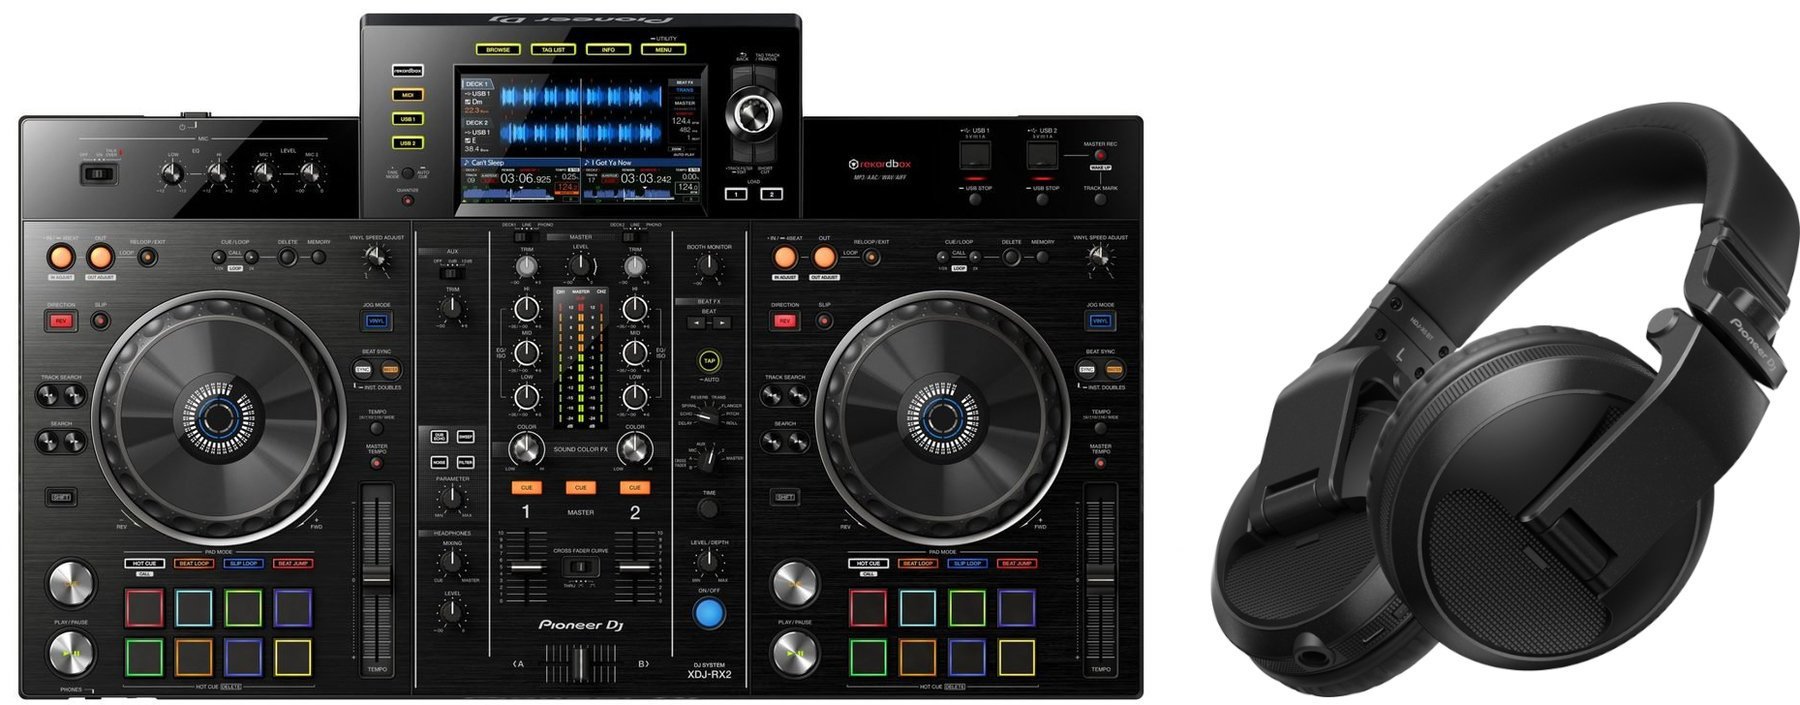 Contrôleur DJ Pioneer Dj XDJ-RX2 Headphone SET Contrôleur DJ